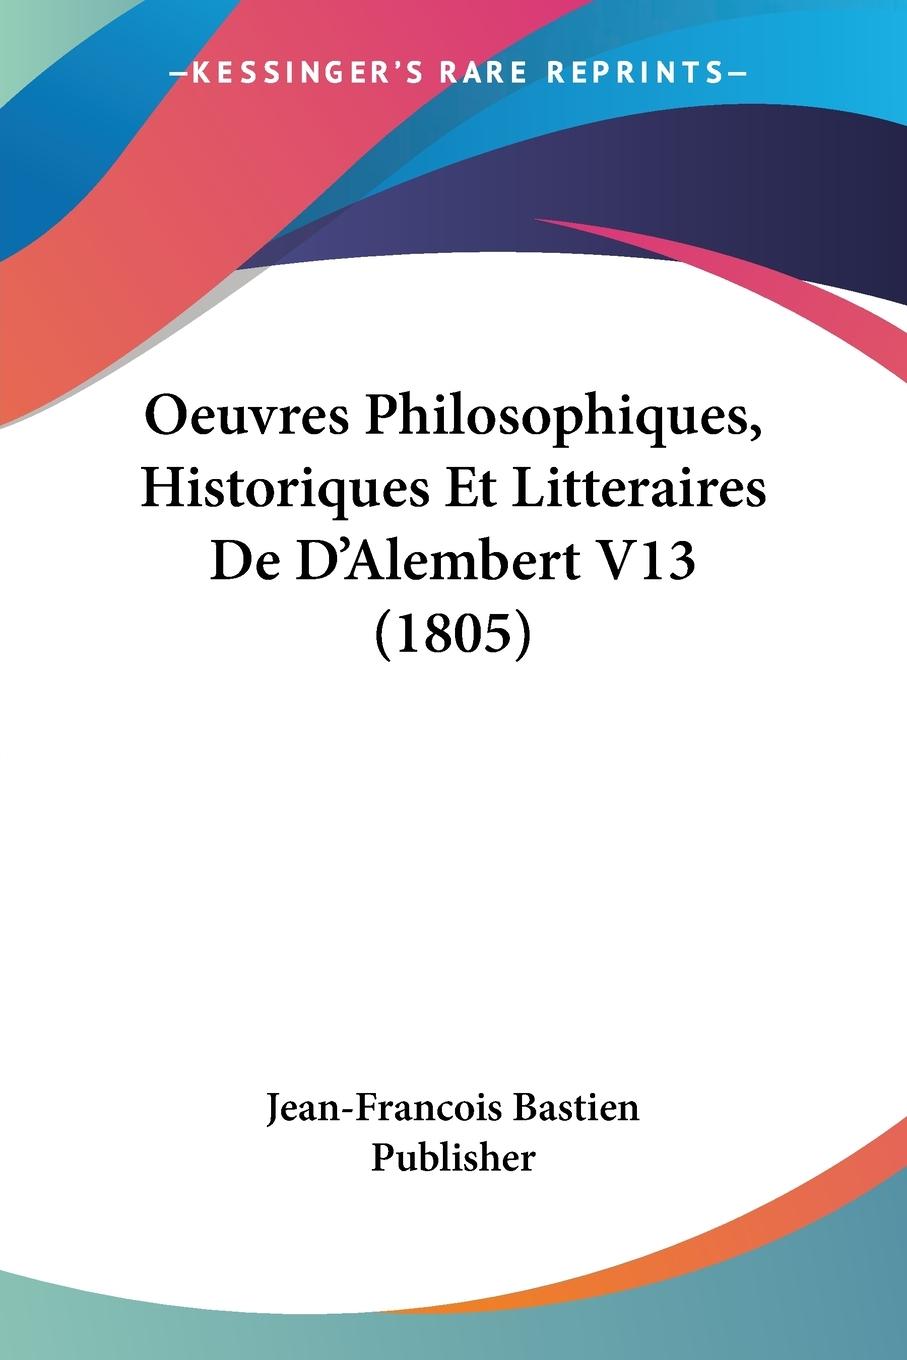 Oeuvres Philosophiques, Historiques Et Litteraires De D Alembert V13 (1805) - Jean-Francois Bastien Publisher